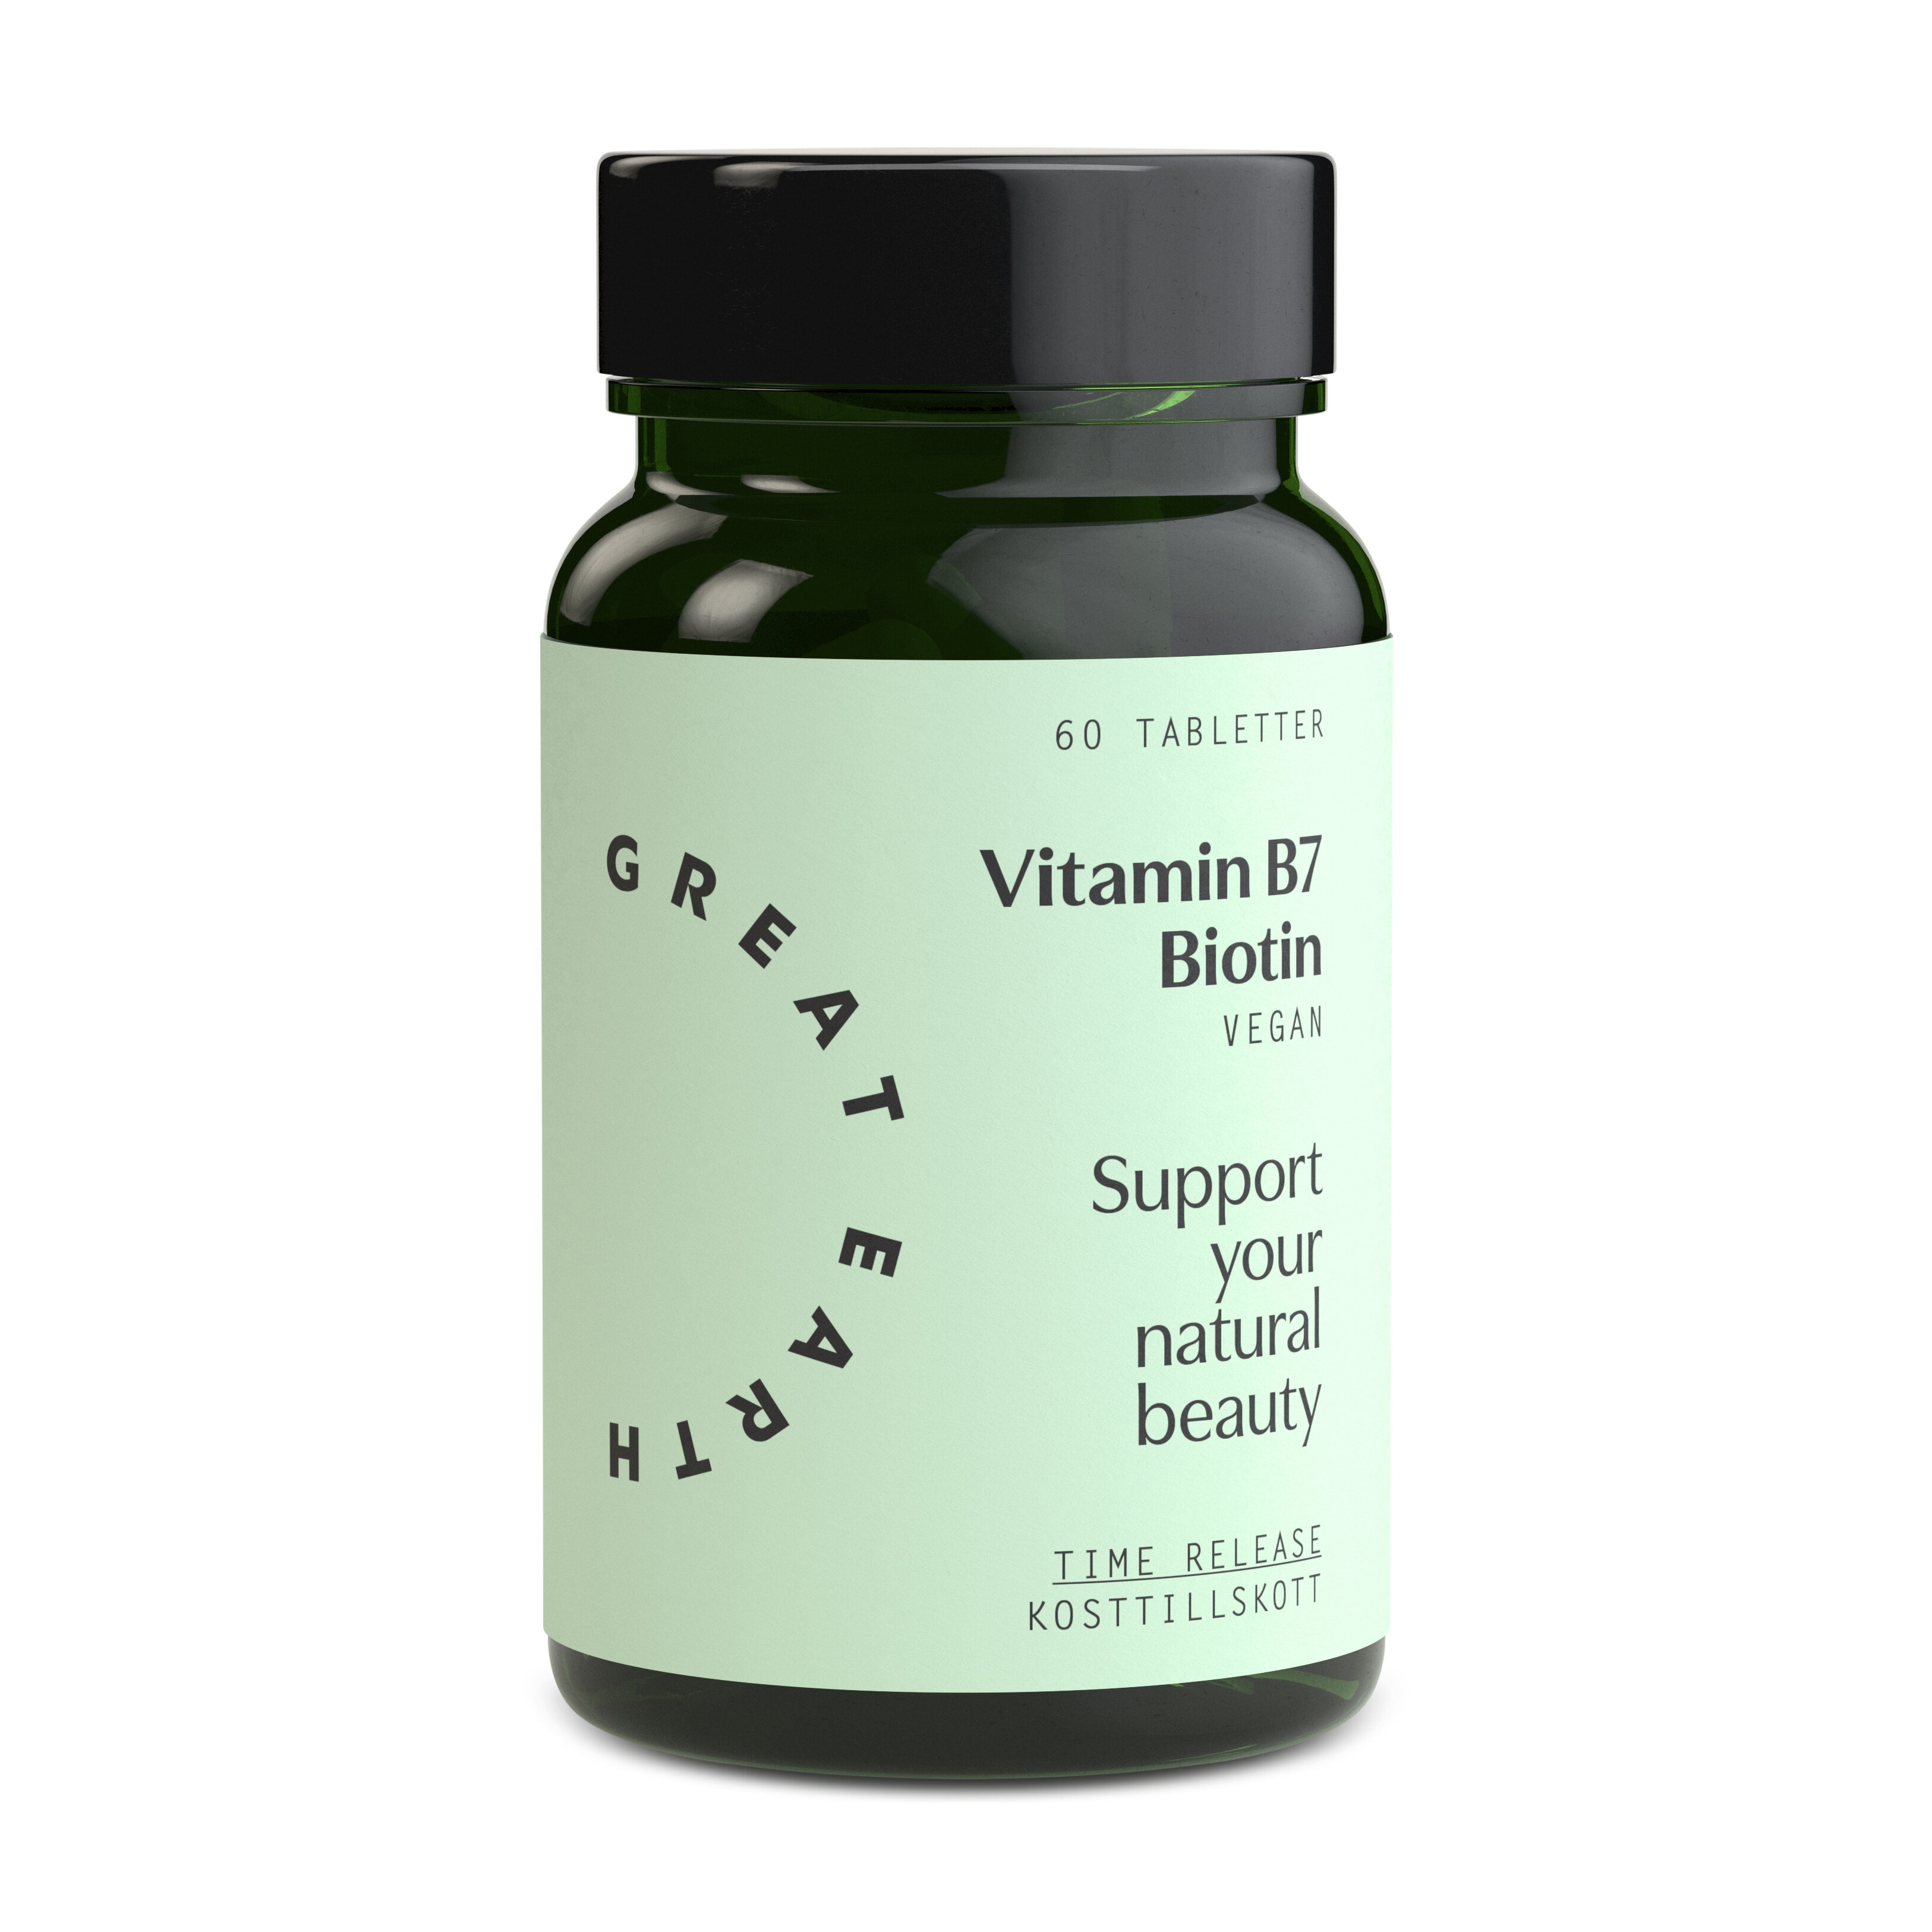 Vitamin B7 Biotin 60 tabletter